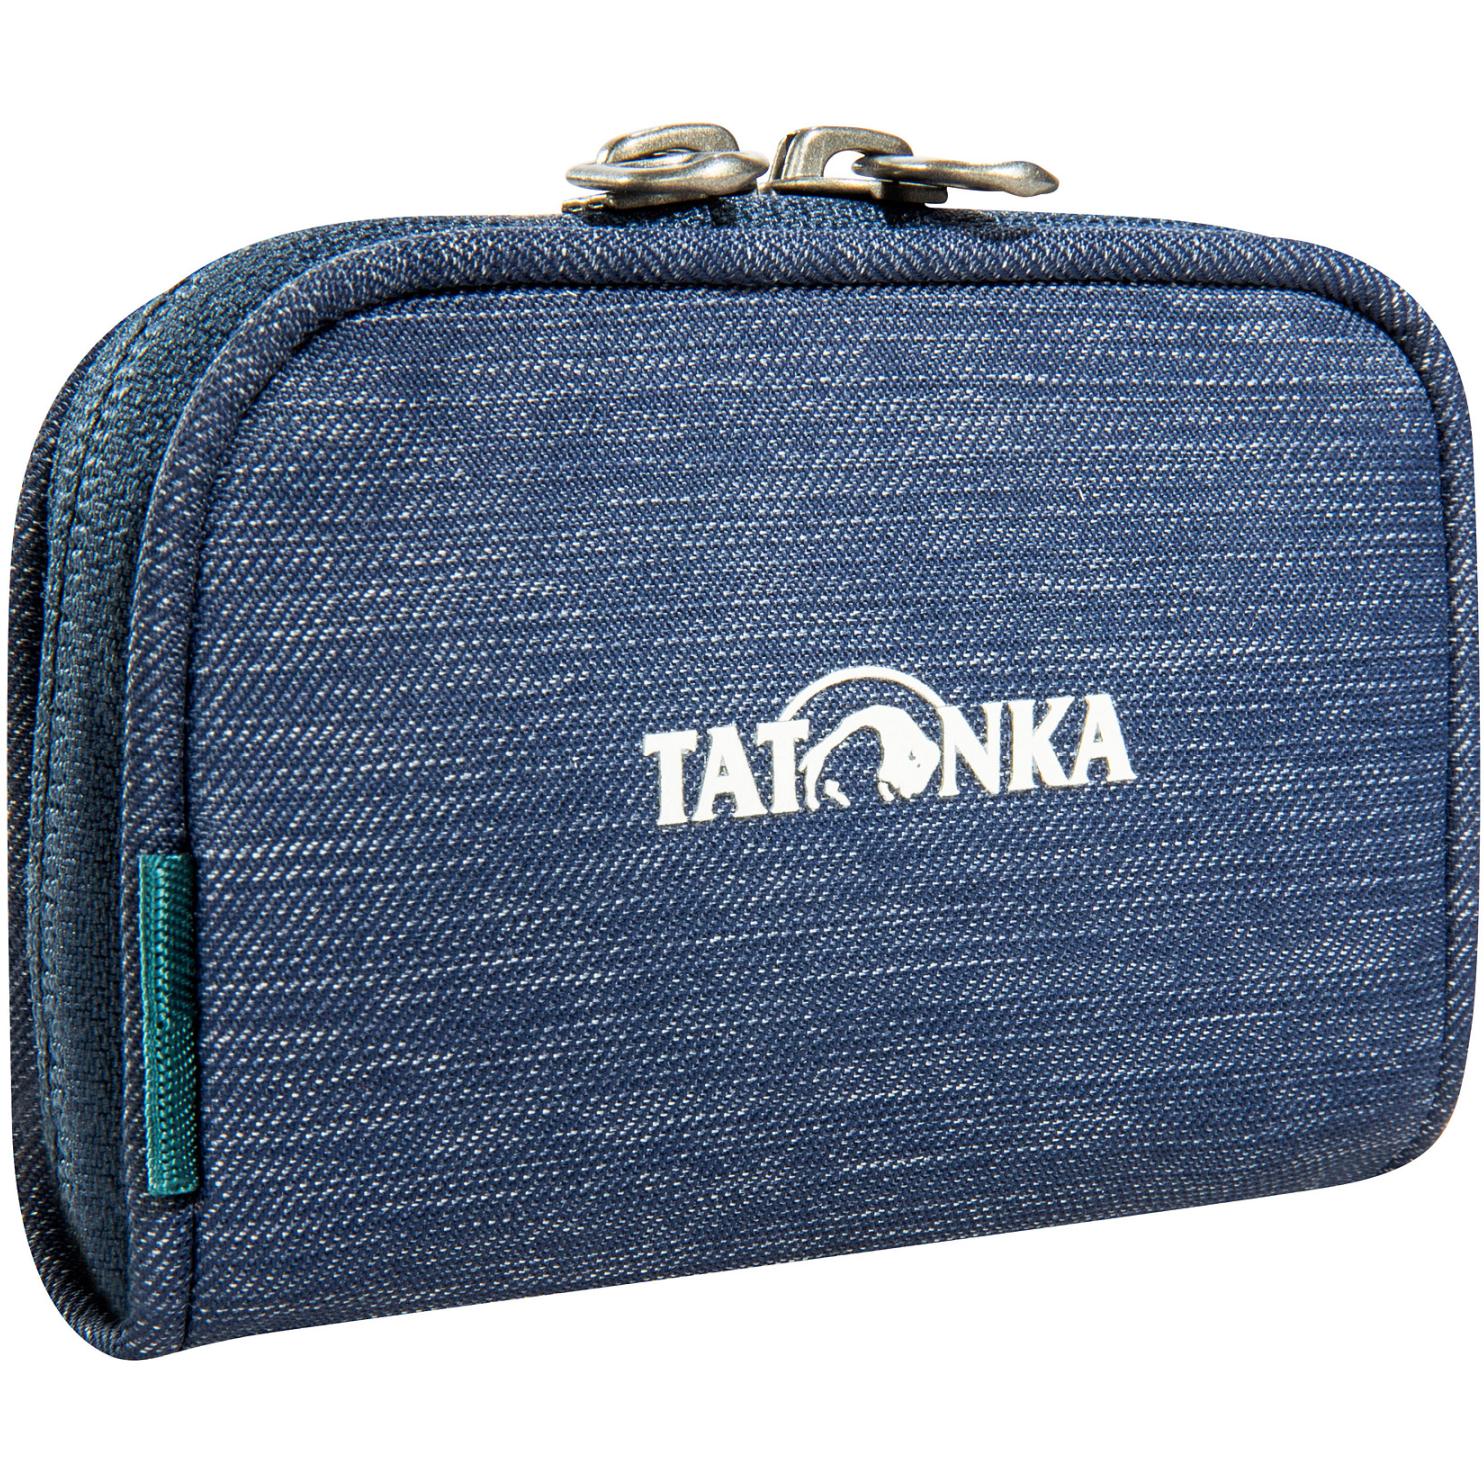 Produktbild von Tatonka Plain Wallet Geldbörse - navy